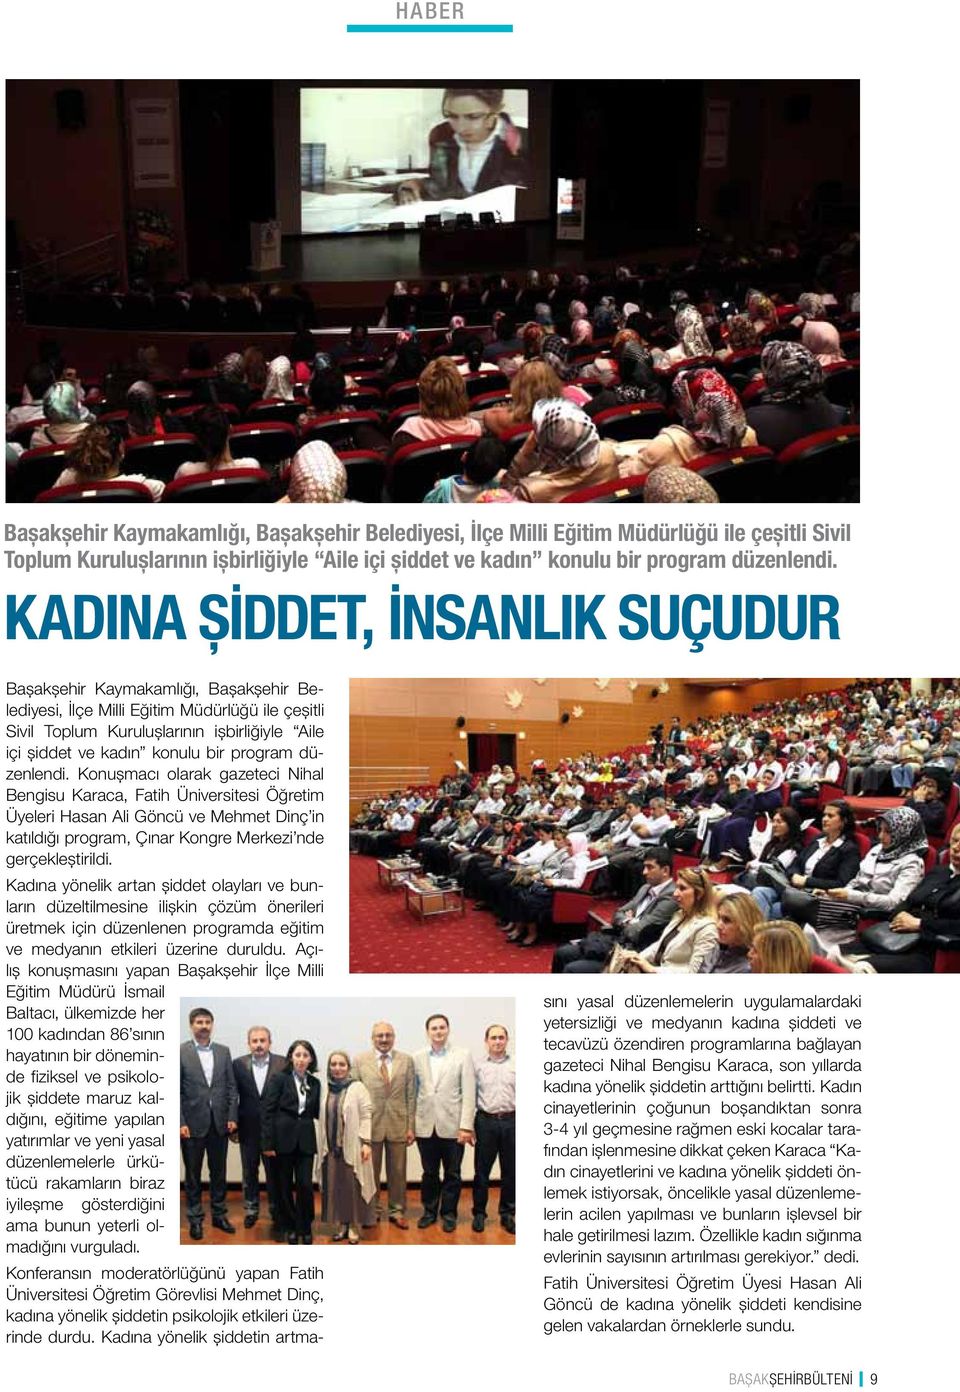 program düzenlendi. Konuşmacı olarak gazeteci Nihal Bengisu Karaca, Fatih Üniversitesi Öğretim Üyeleri Hasan Ali Göncü ve Mehmet Dinç in katıldığı program, Çınar Kongre Merkezi nde gerçekleştirildi.